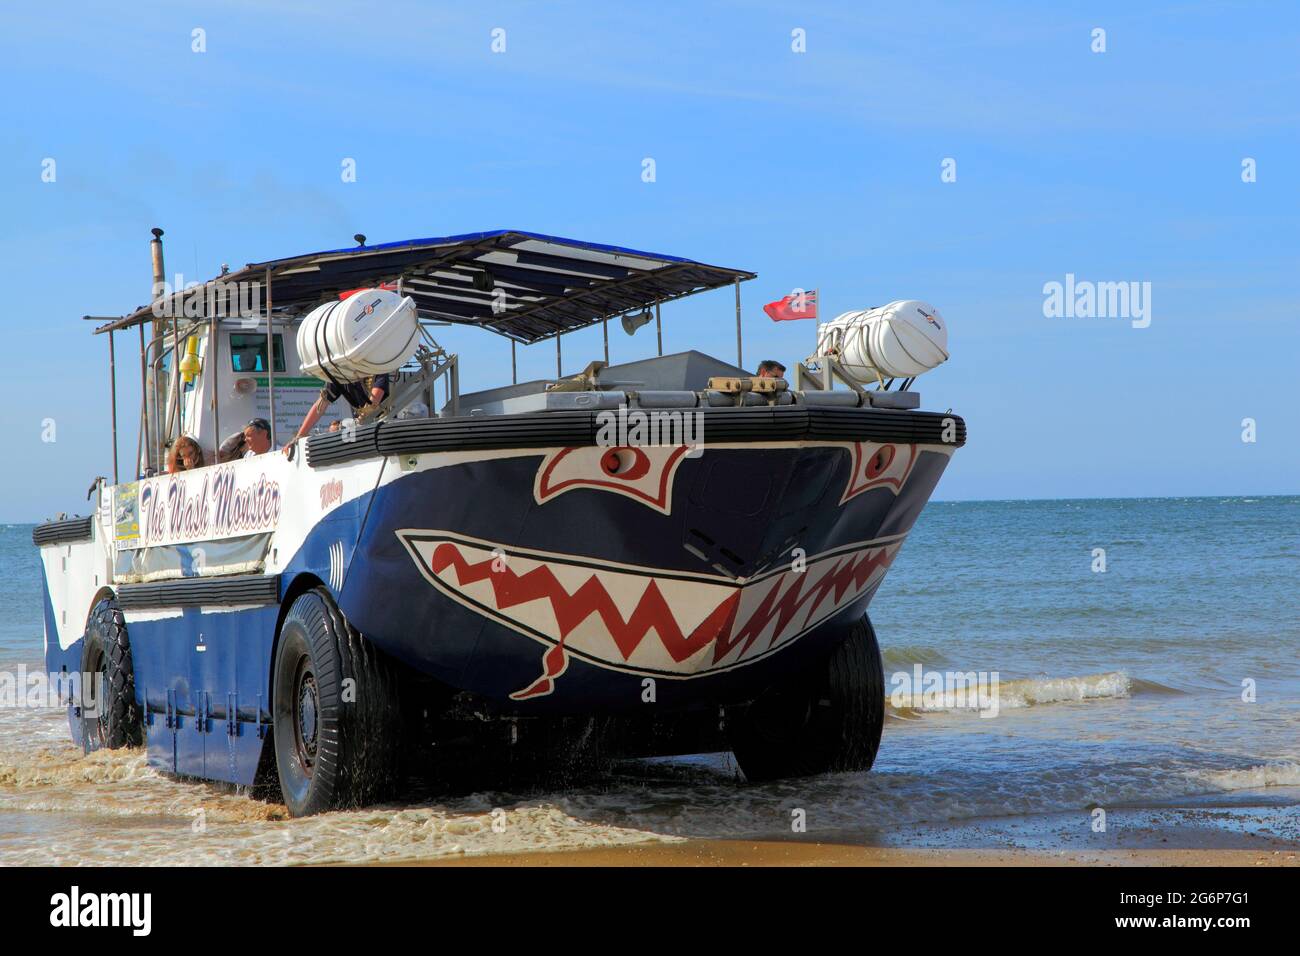 The Wash Monster, croisières d'agrément, croisière, véhicule amphibie, Hunstanton Beach, Norfolk, Angleterre, Royaume-Uni Banque D'Images